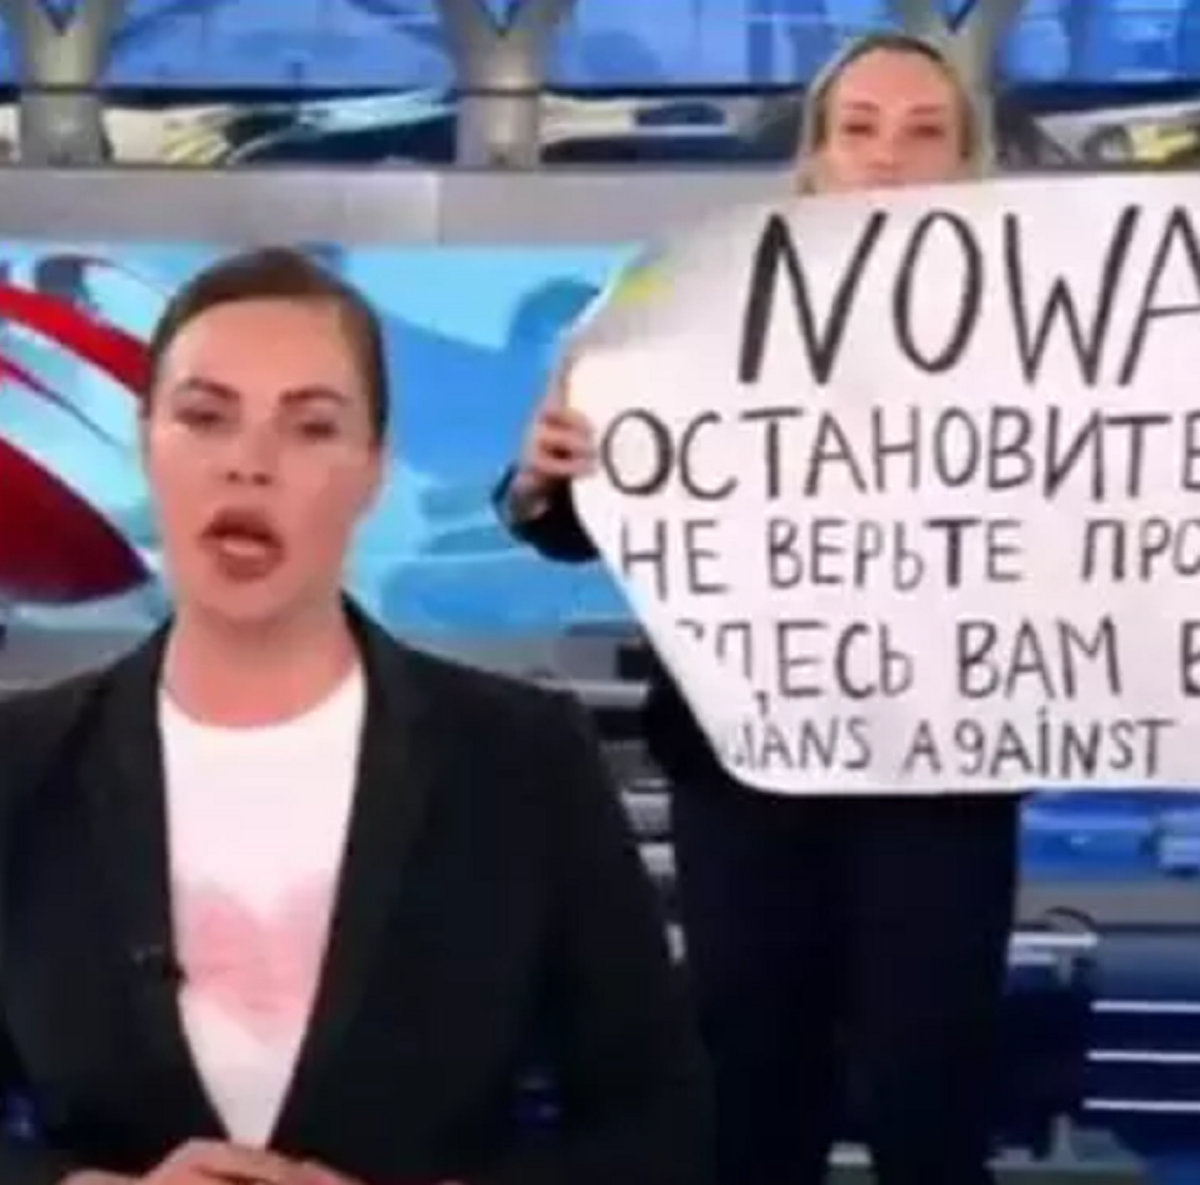 Jurnalista Marina Ovsiannikova, care a protestat la televiziunea rusă, se teme pentru viața ei: ”Înțeleg amploarea problemelor”